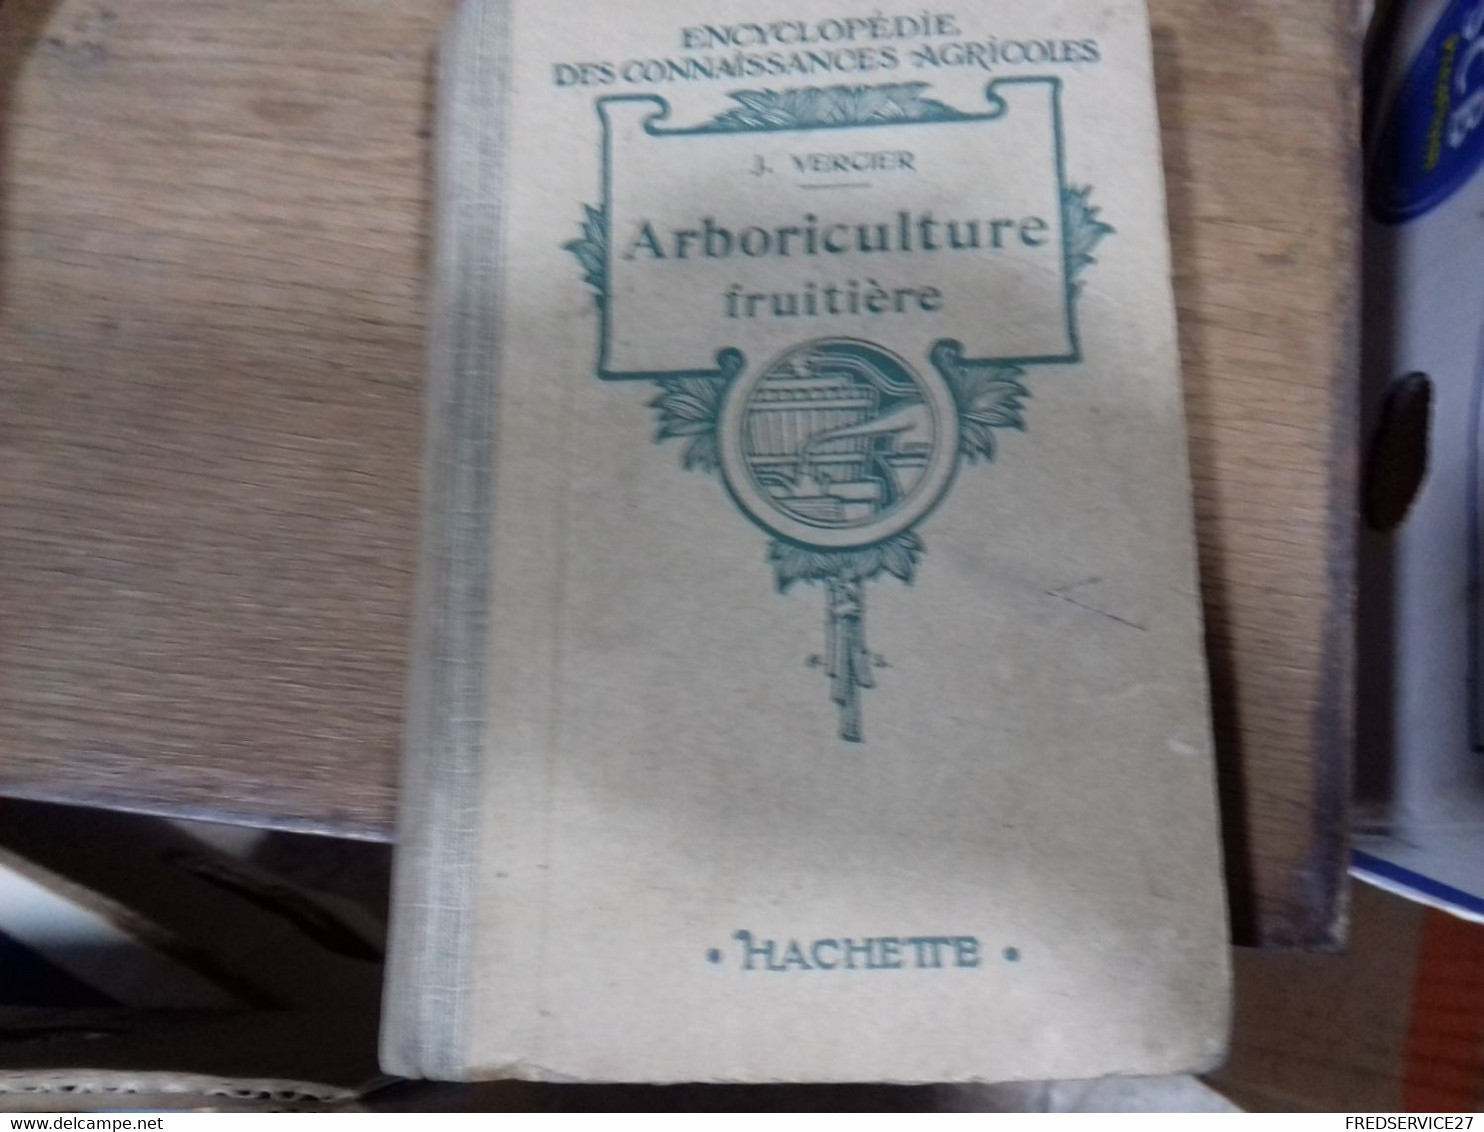 43  //   ENCYCLOPEDIE DES CONNAISSANCES AGRICOLES  ARBORICULTURE FRUITIERE    HACHETTE - Encyclopedieën